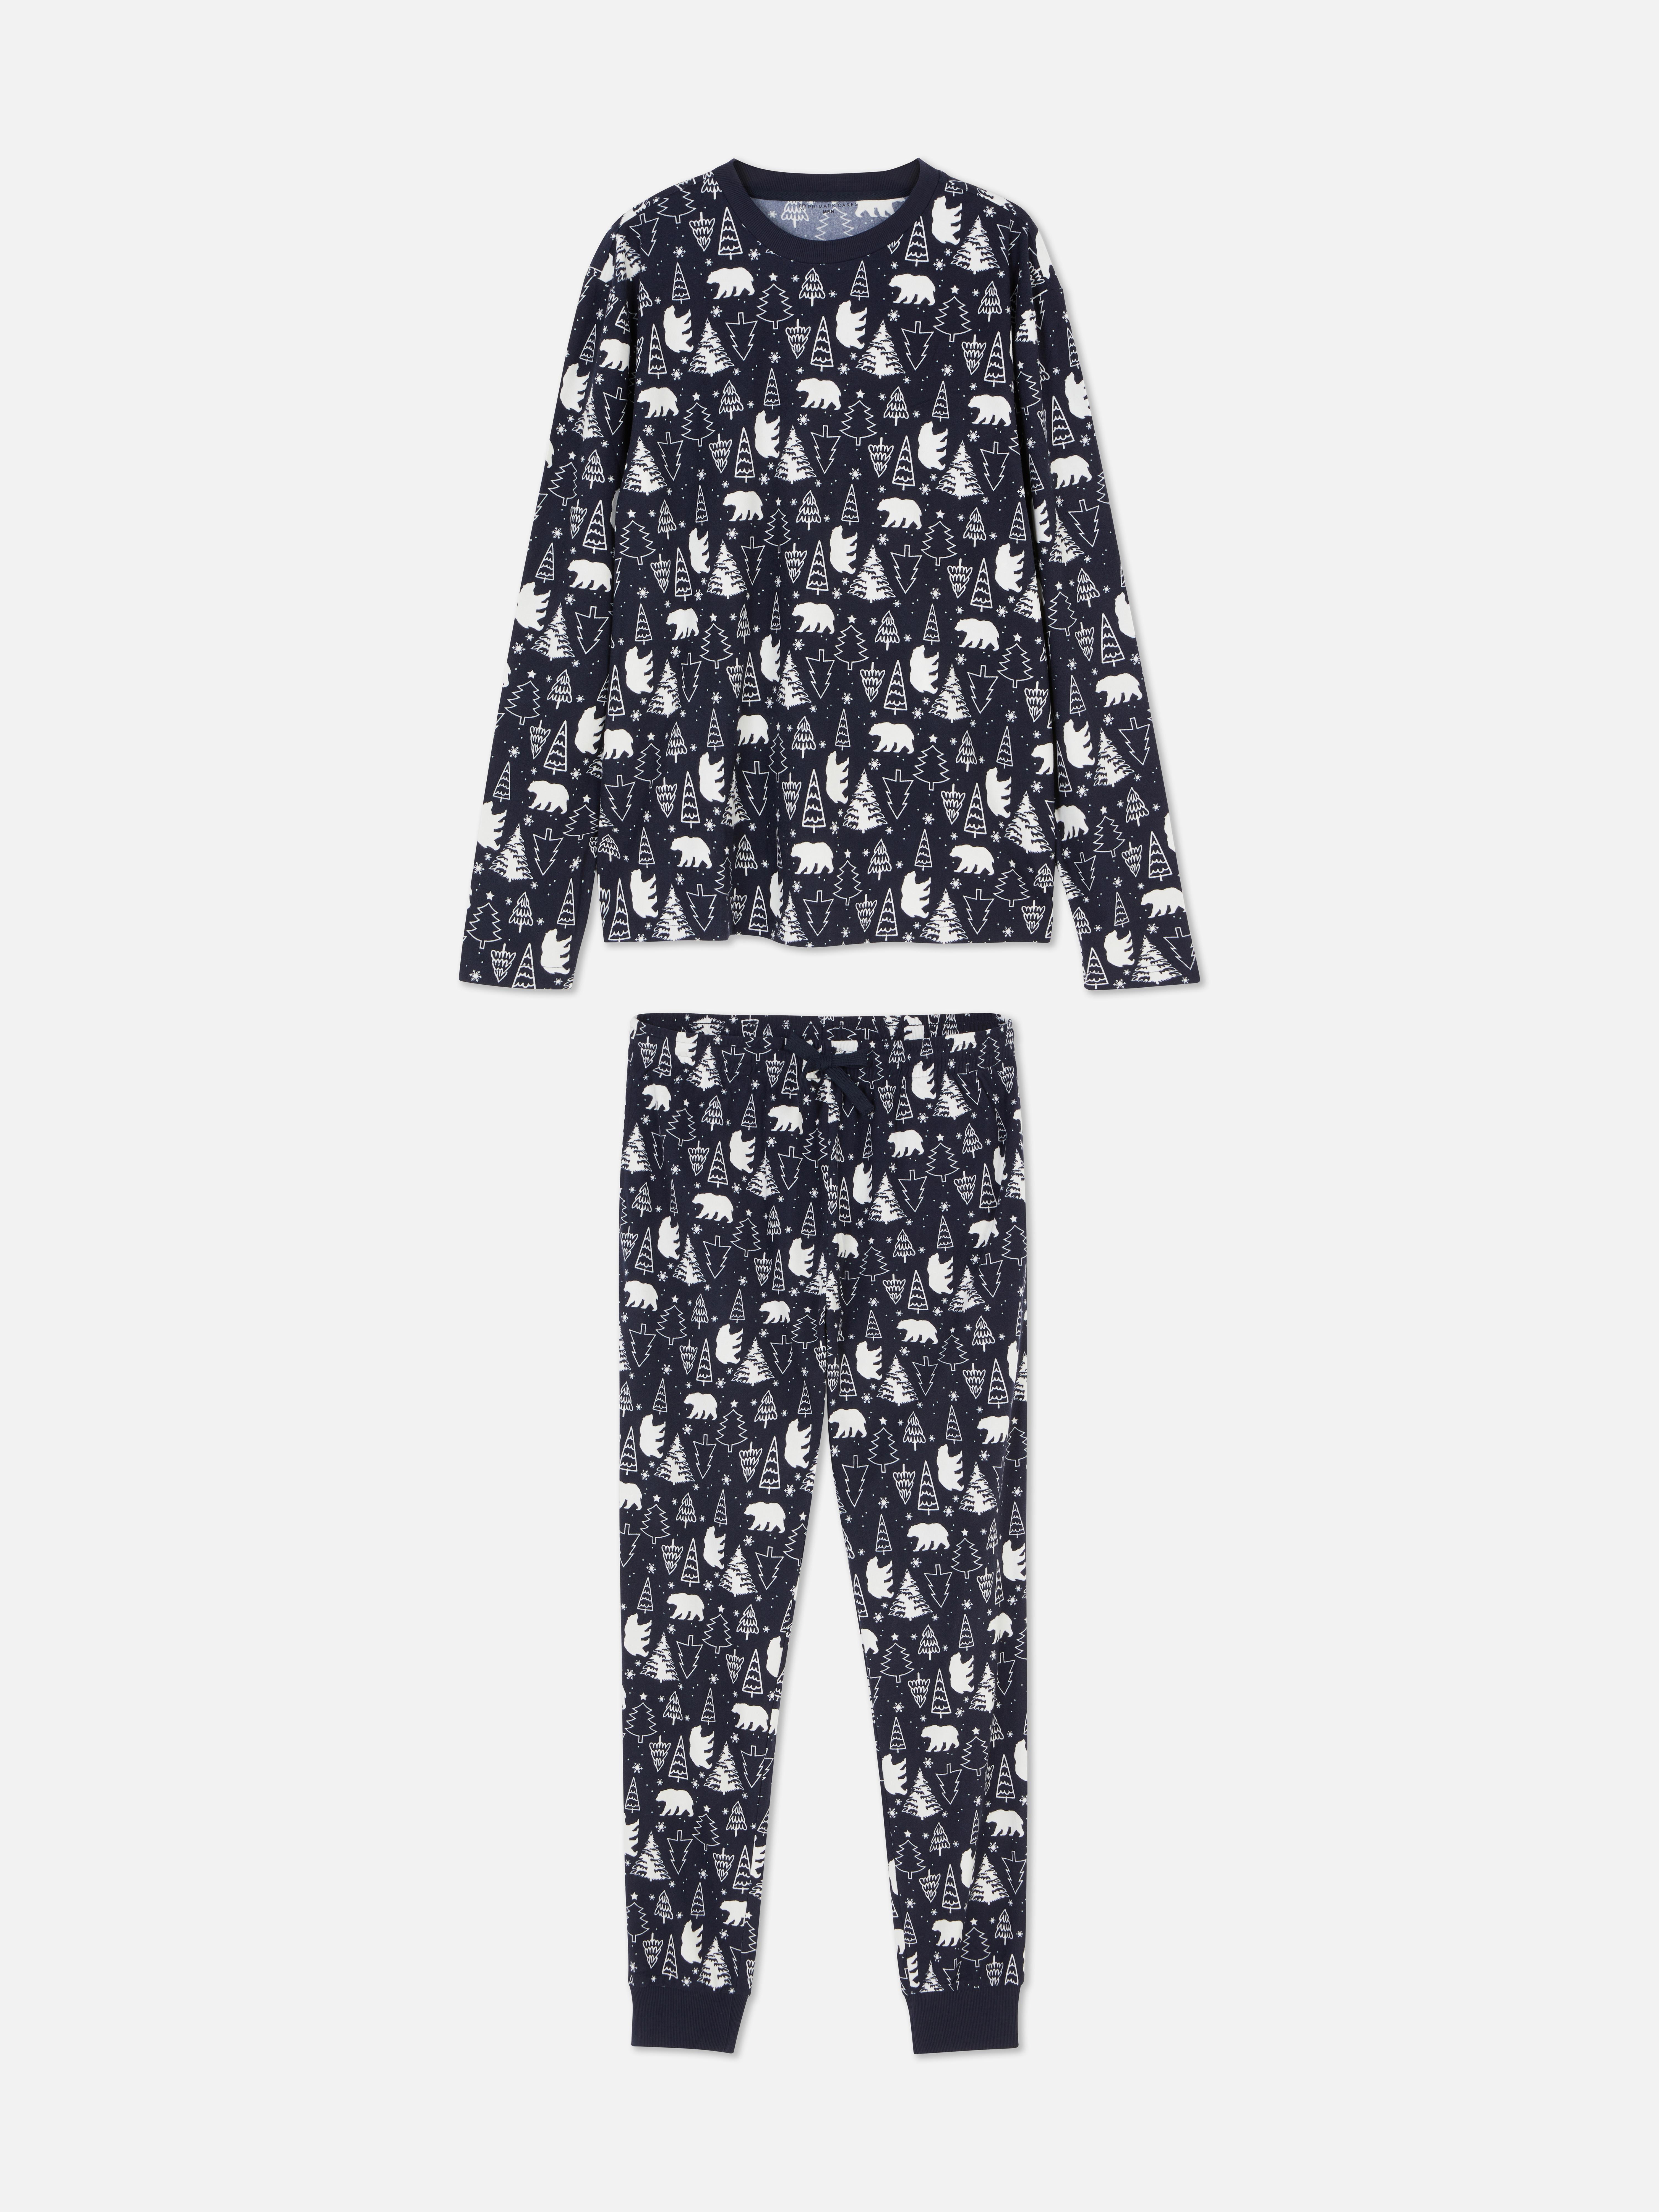 Pyjama de Noël ours polaire pour homme